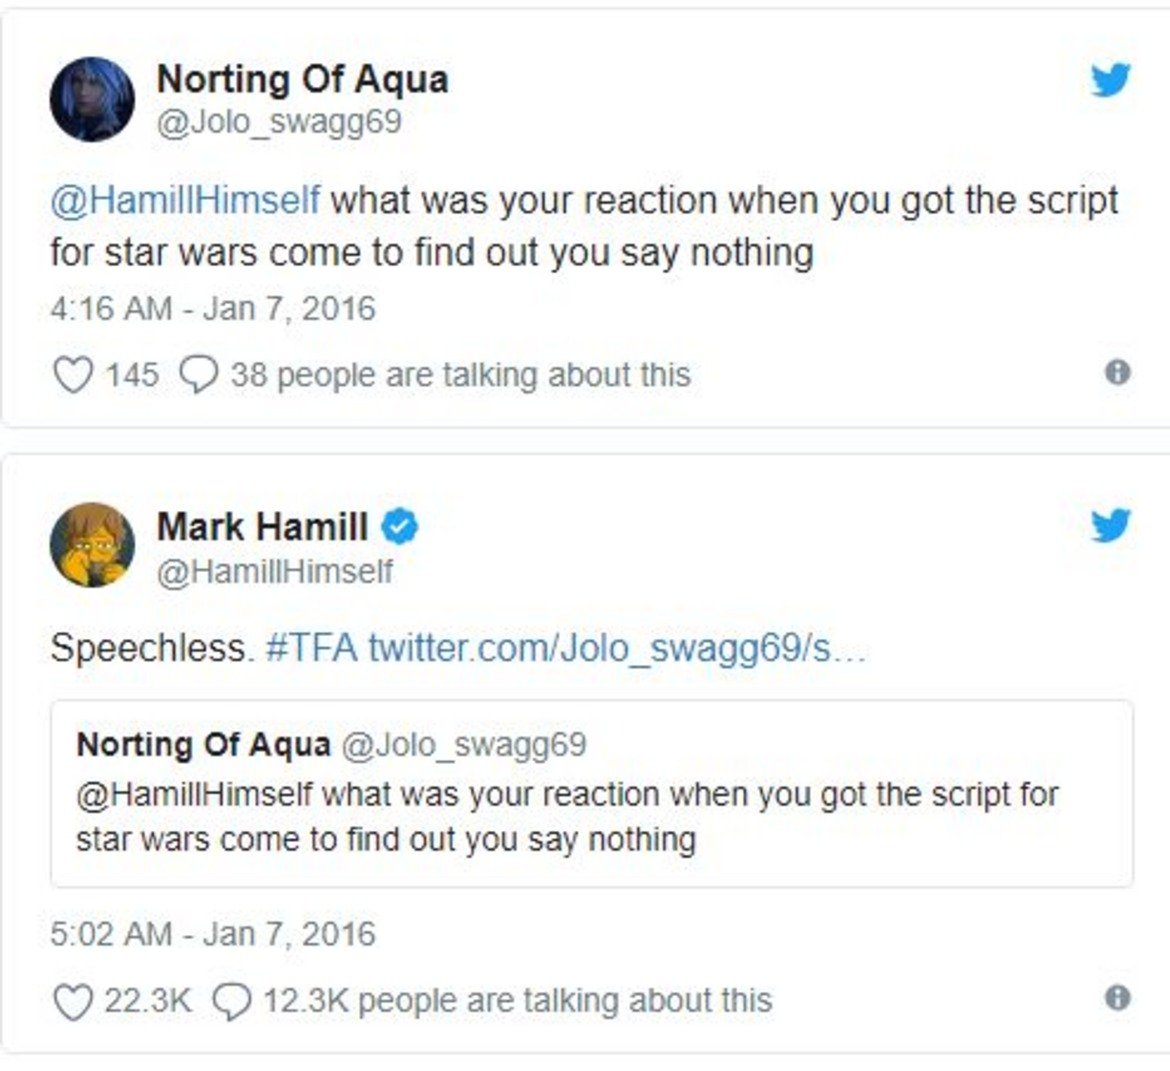 7. Или този случай...

Друг почитател пита Хамил каква е била реакцията му, когато е получил сценария на "Междузвездни войни: Силата се пробужда" и е разбрал, че няма реплики във филма.

Отговорът на Хамил е, че е бил "безмълвен". Трол, бе. Трол!